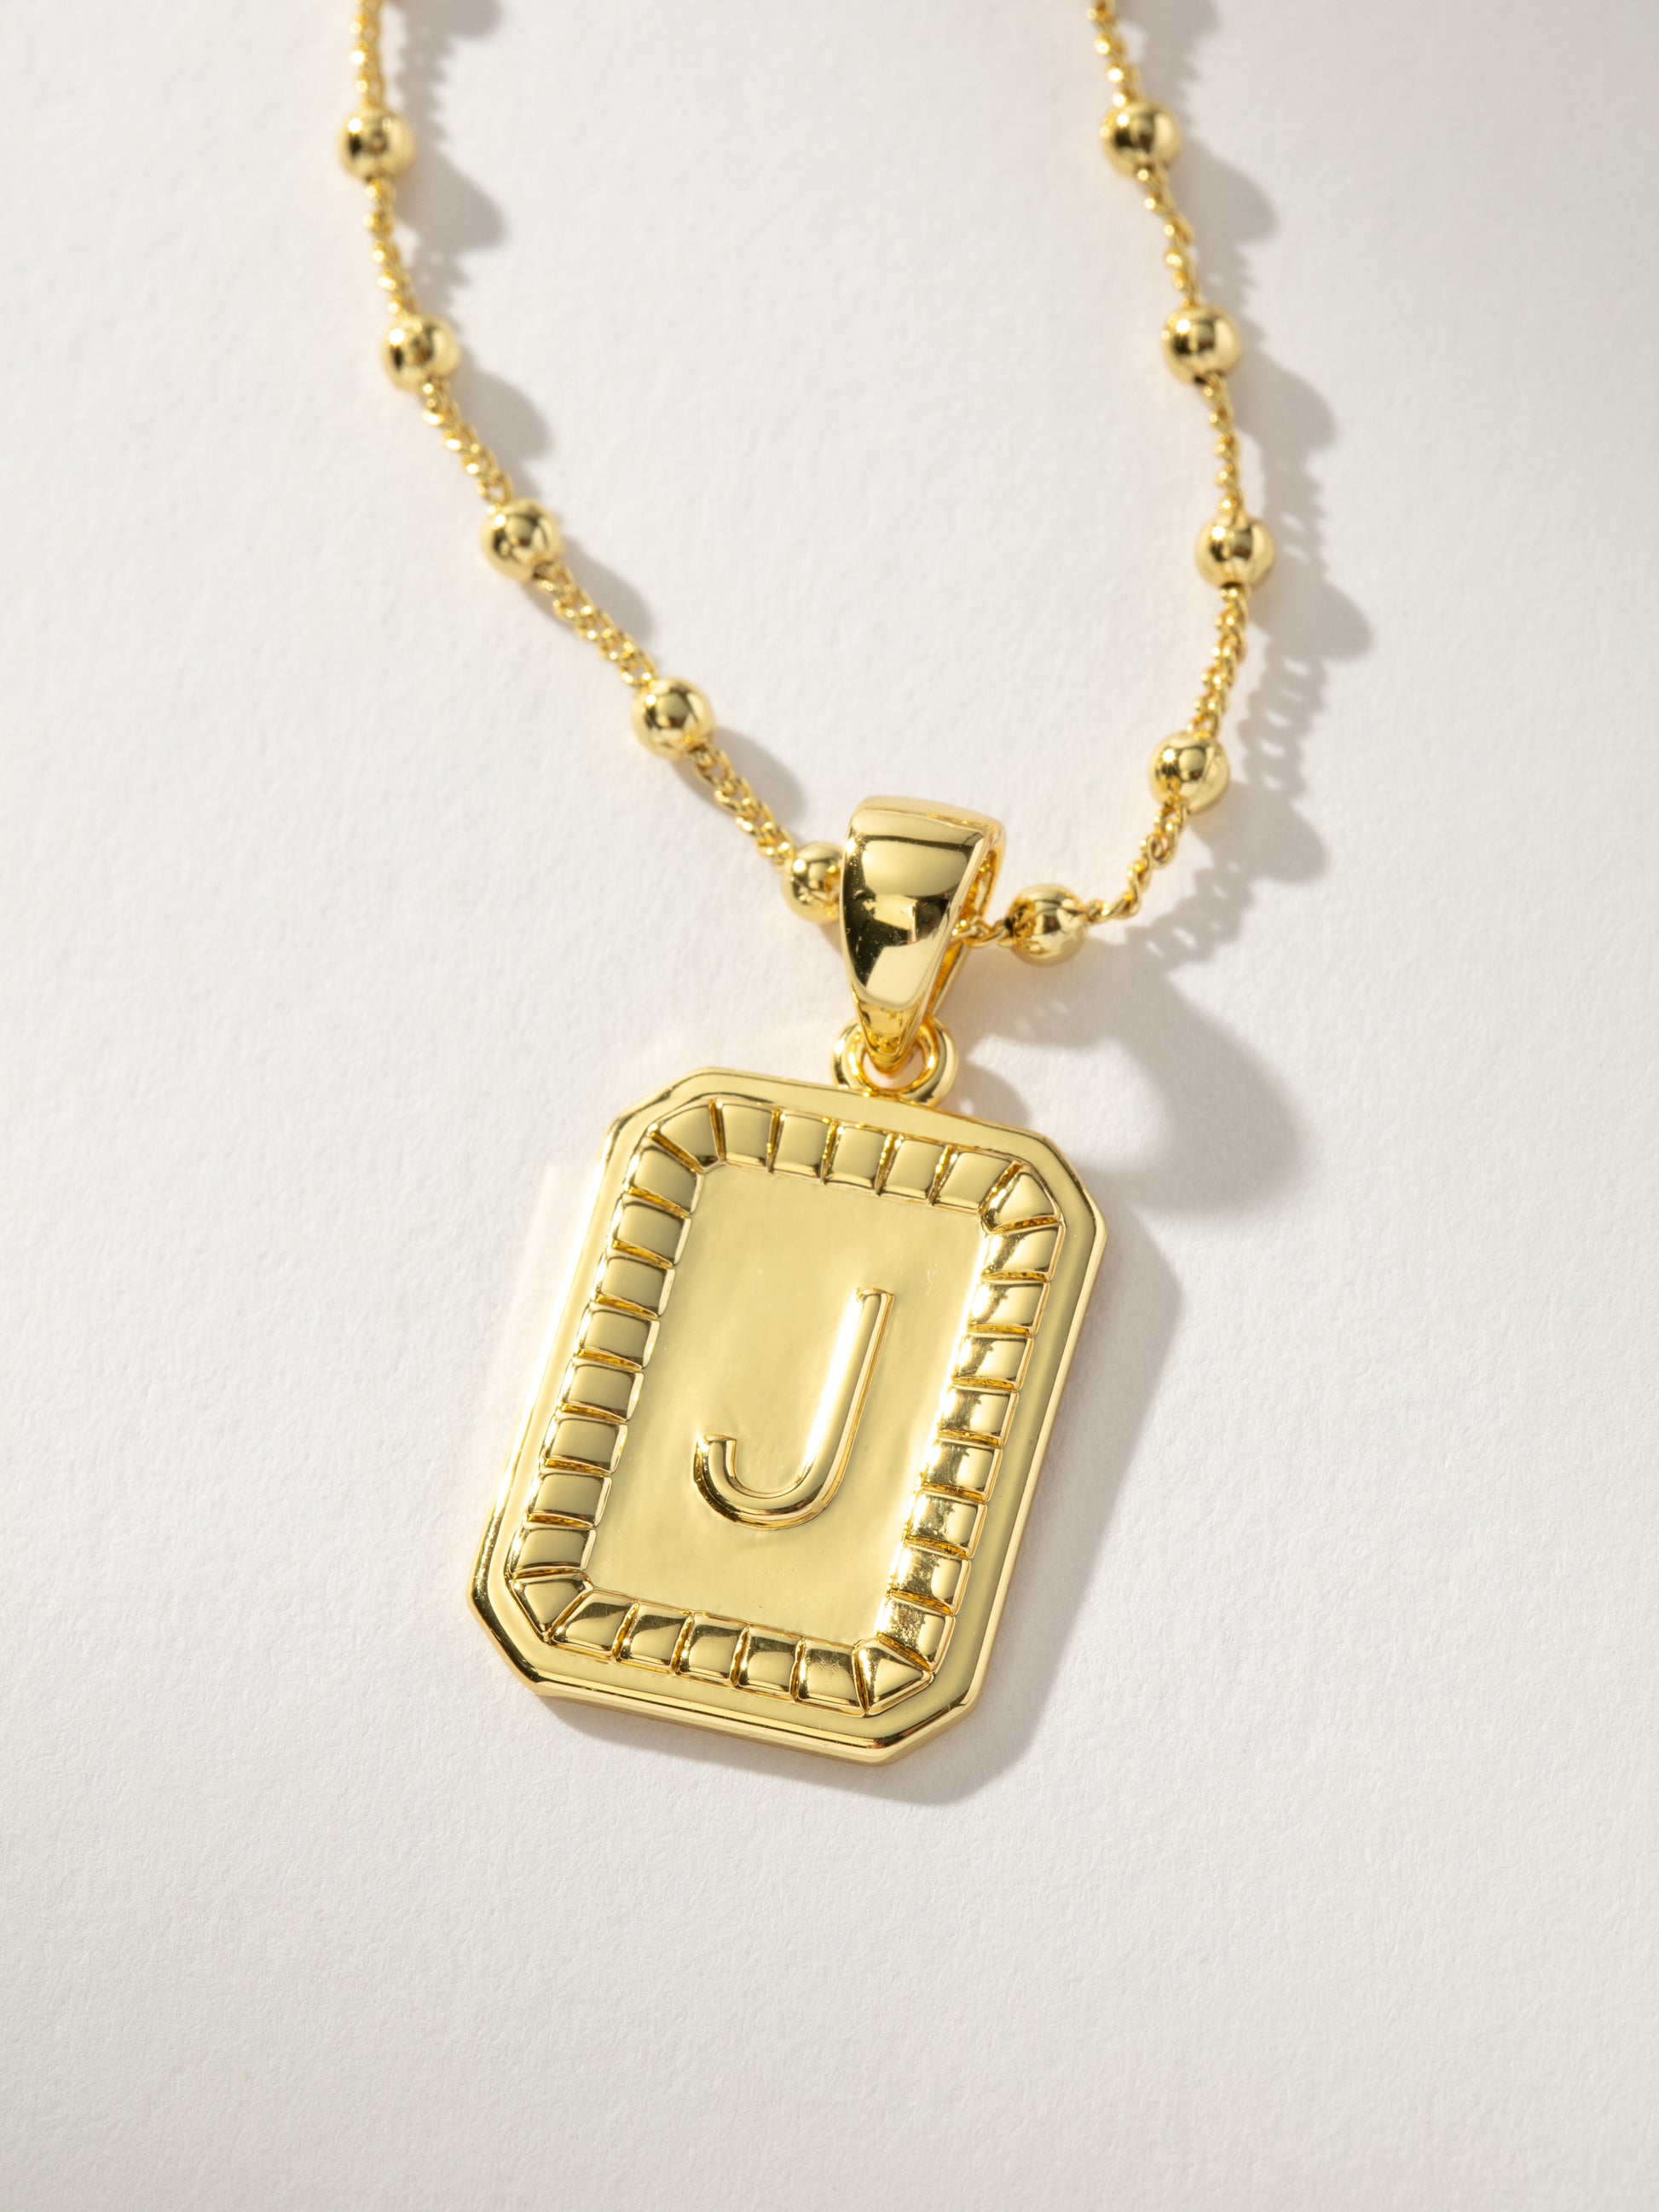 Sur Necklace | Gold J | Product Image | Uncommon James